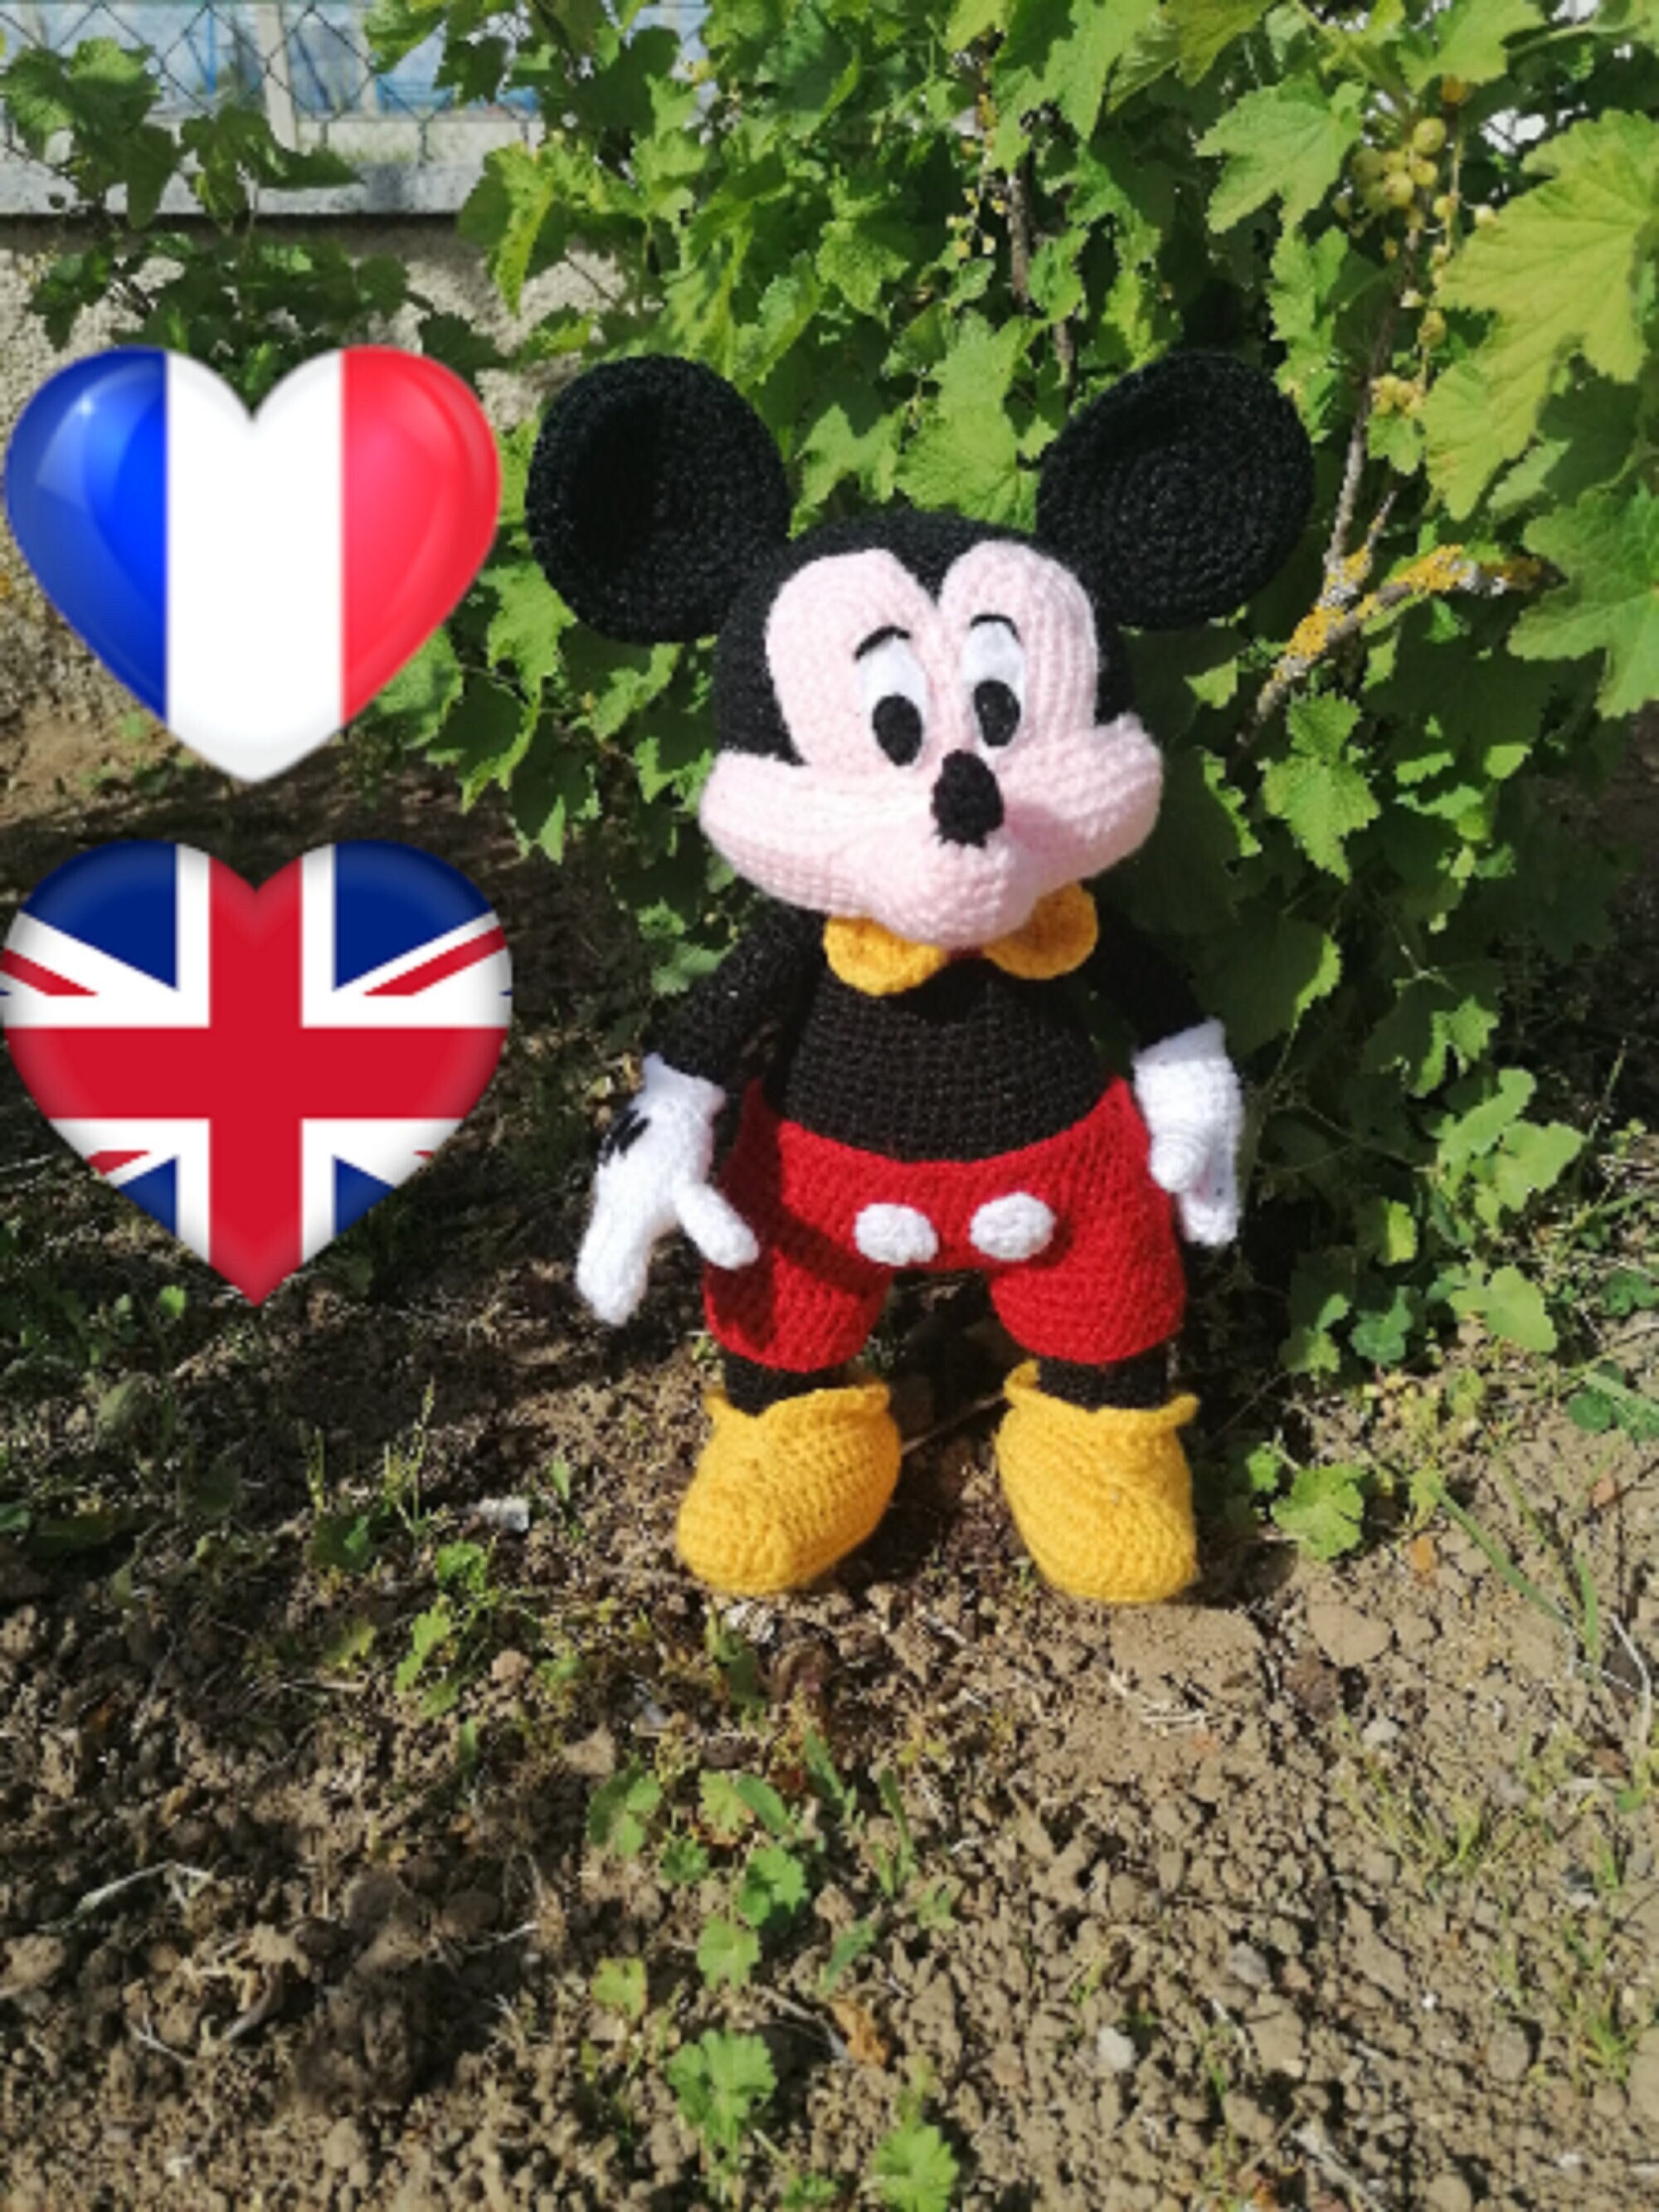 Peluche Mickey Mouse style vintage Disneyland Paris Disney rétro coutures  40 cm